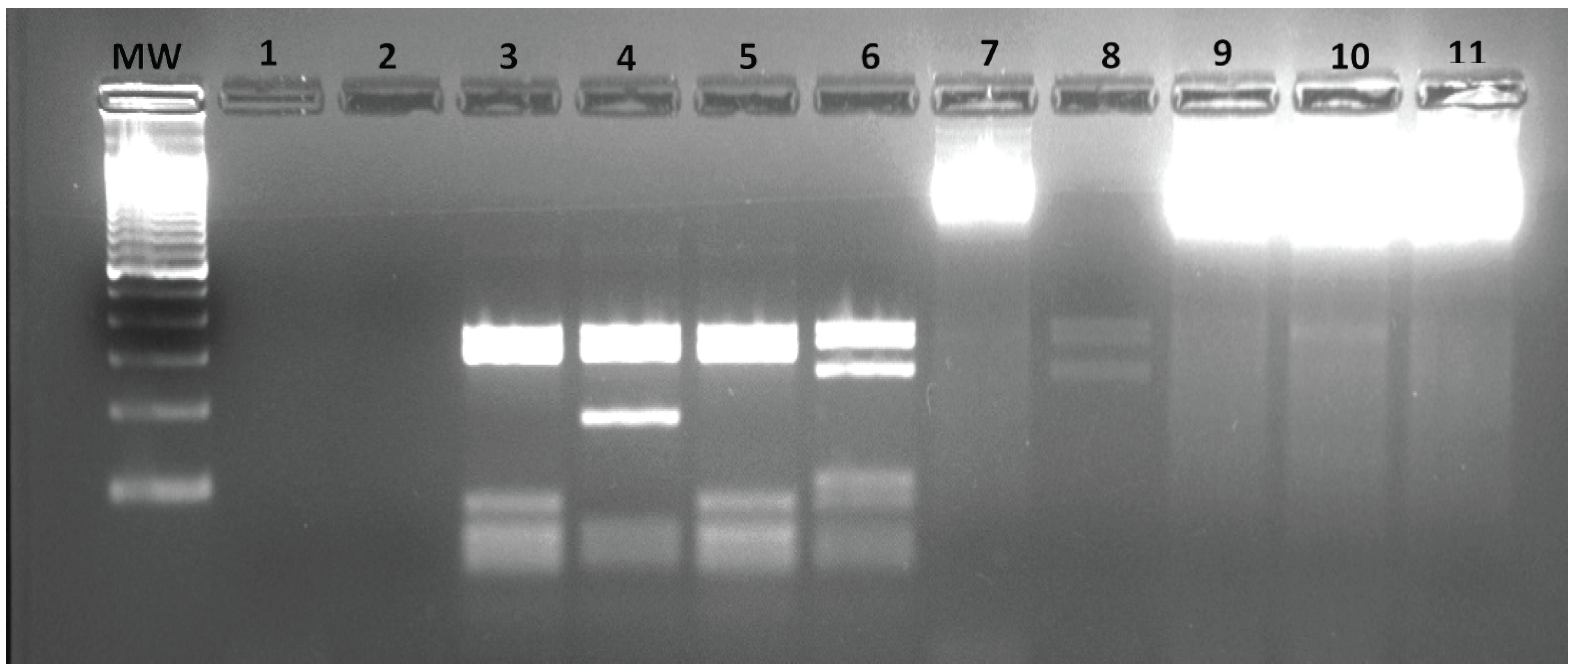  PCR-RFLP. Obtención de patrones de amplificación posterior a la
digestión con la enzima HaII. MW. Marcador 100 pb, Pozo 1 control negativo,
pozo 2. Control negativo, pozo 3. L. (V.) panamensis, pozo 4. L.
braziliensis (V.), pozo 5. L. (V.) guyanensis, pozo 6. L. (L.) infantum, pozo
8. L. (L.) mexicana. Pozo 7, 9-11 Controles sin digerir